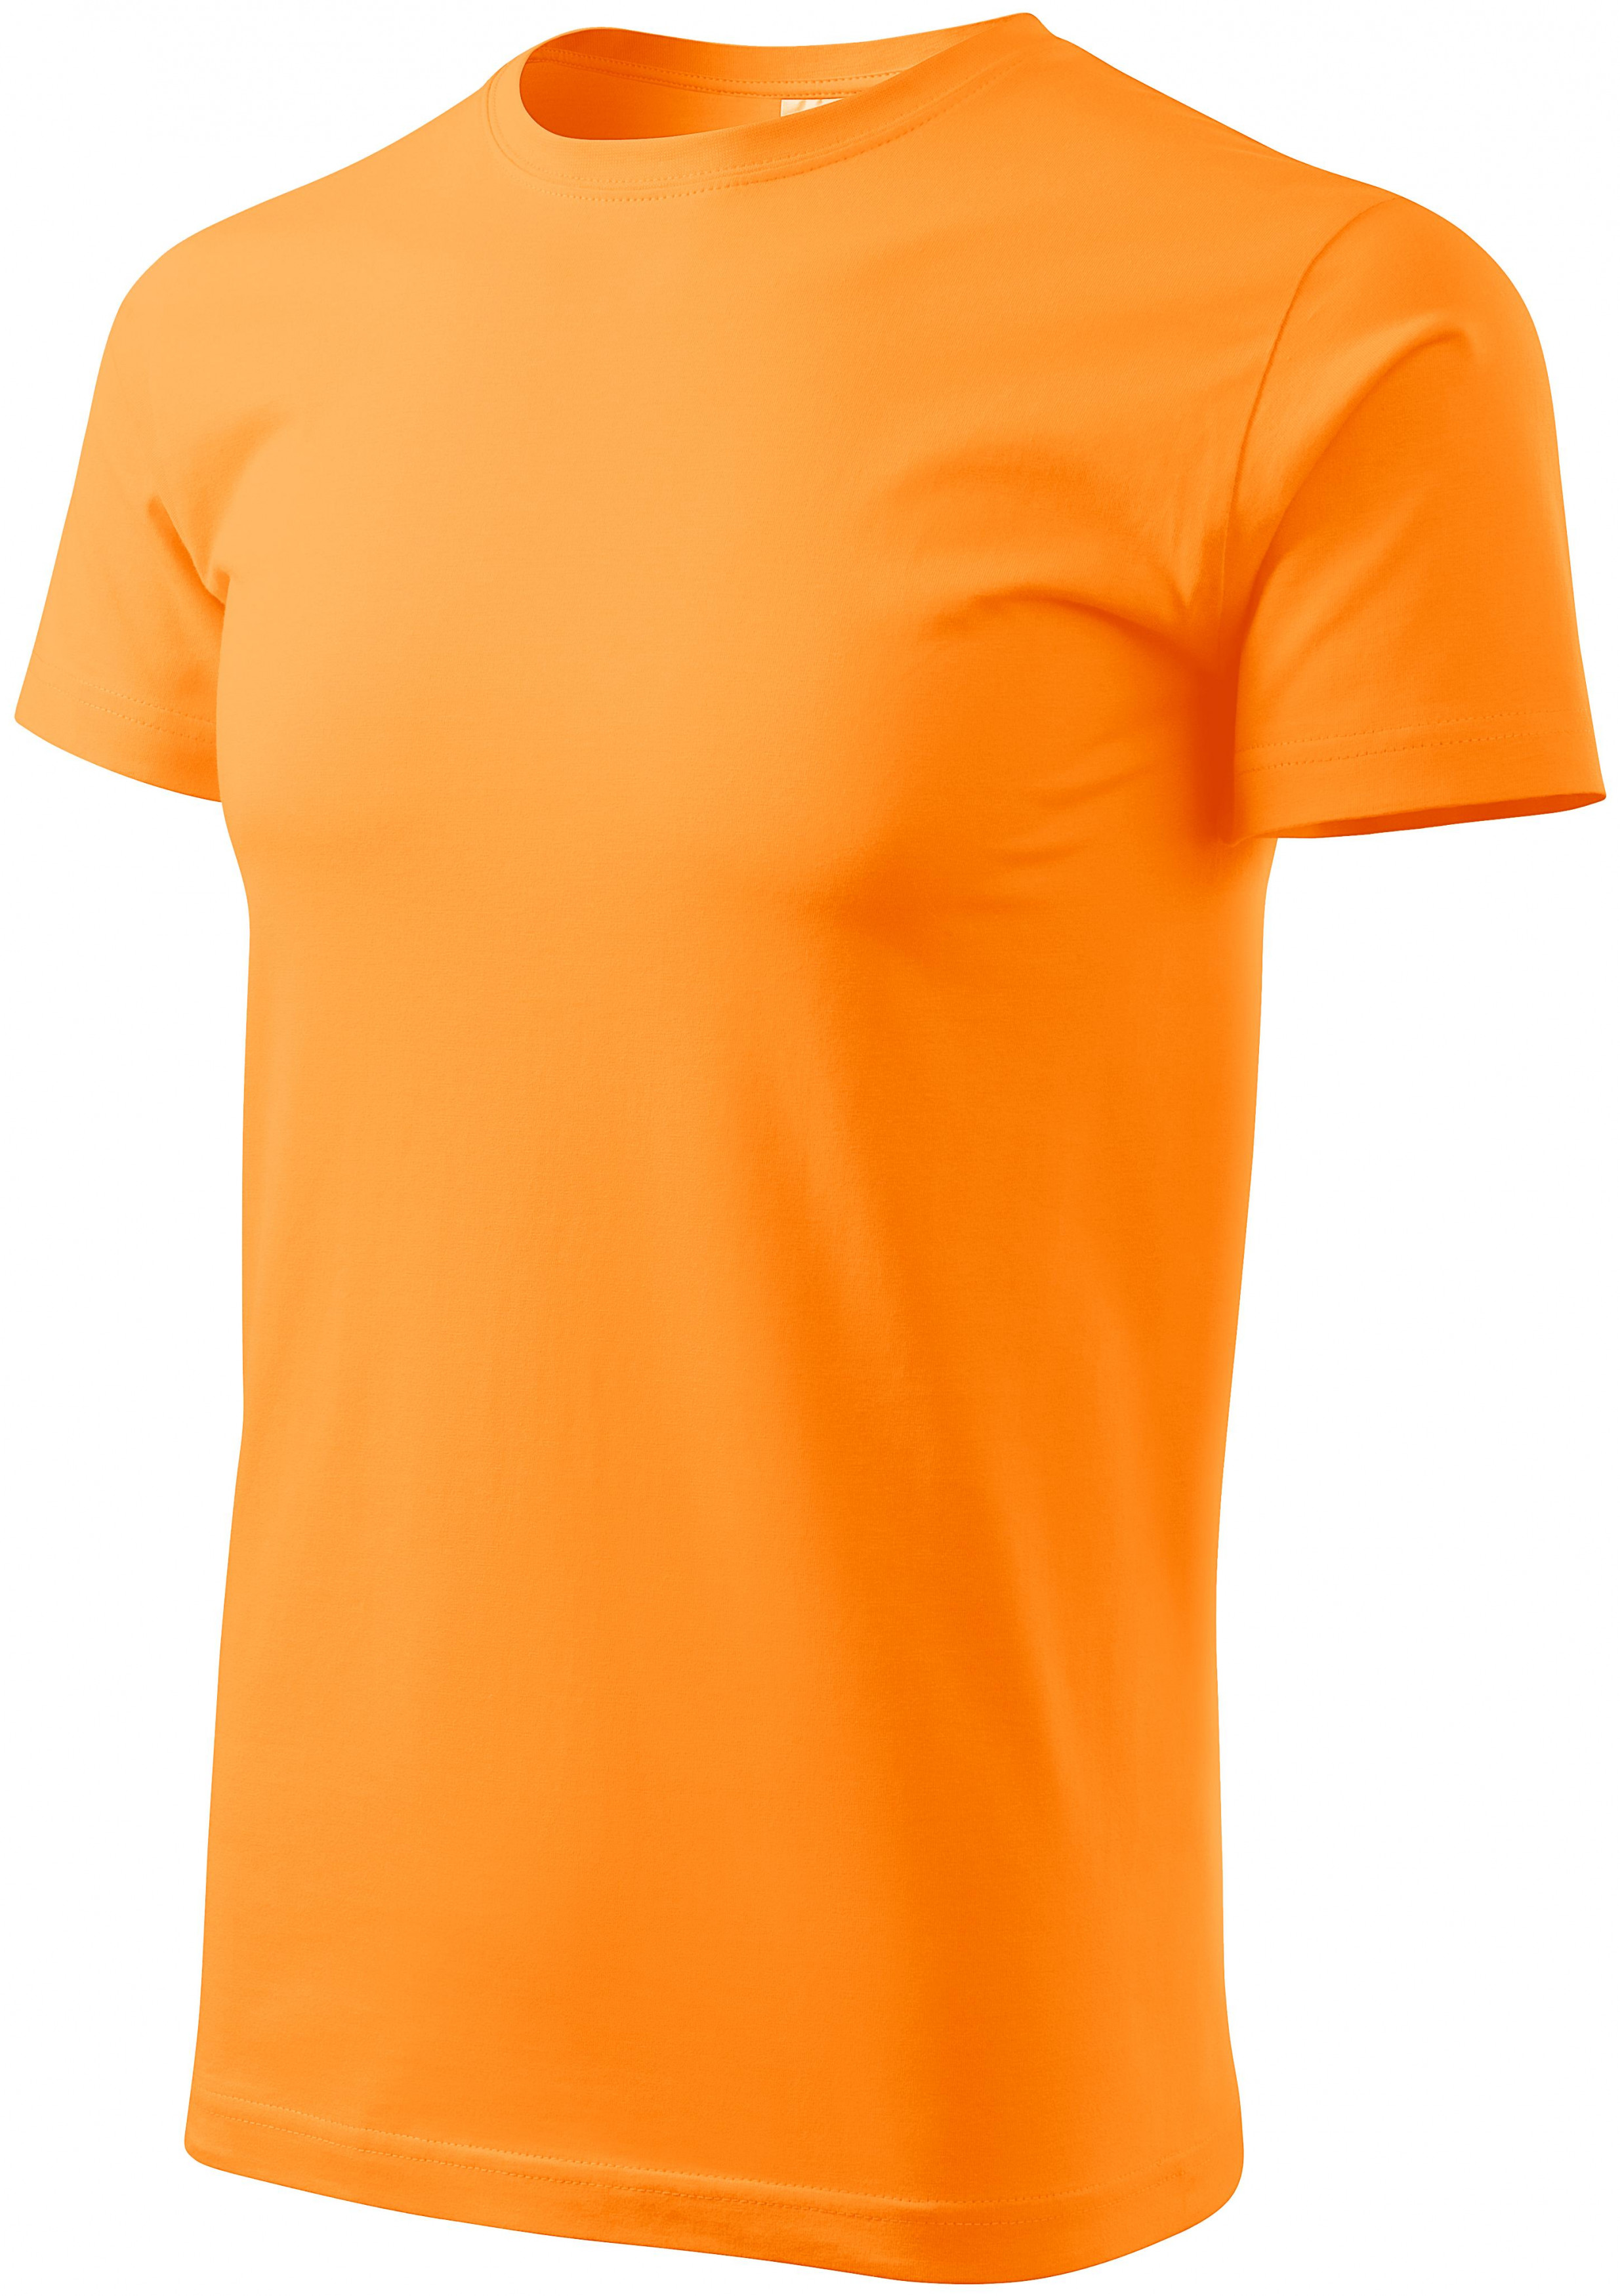 Tričko vyššej gramáže unisex, mandarínková oranžová, L